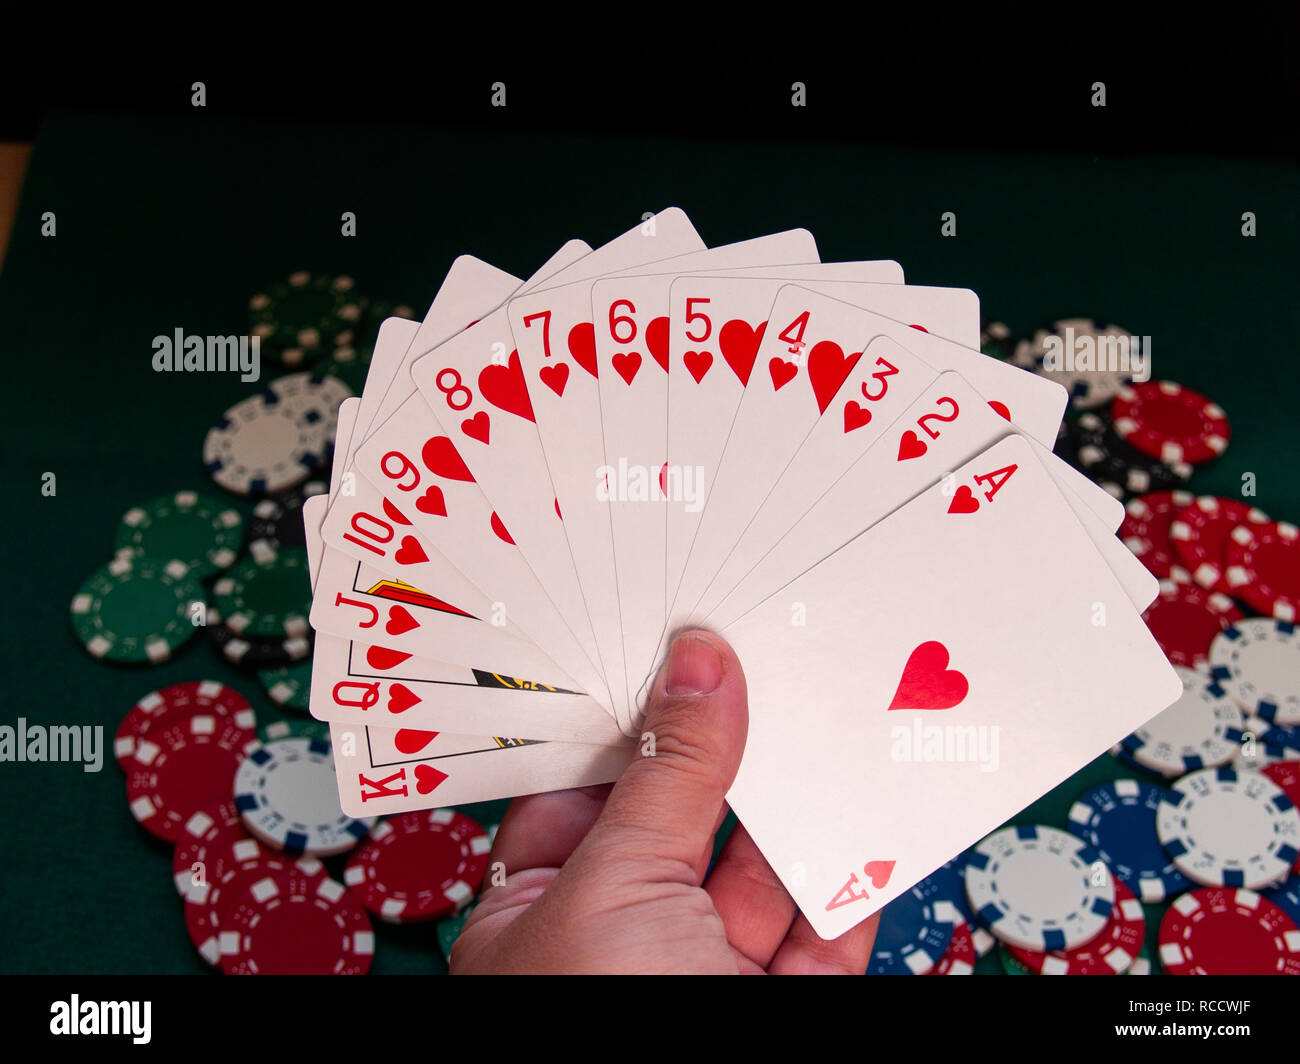 Eine Person spielen Poker mit einem Deck poker Karten in der Hand und poker chips in verschiedenen Farben auf der grünen Matte Stockfoto